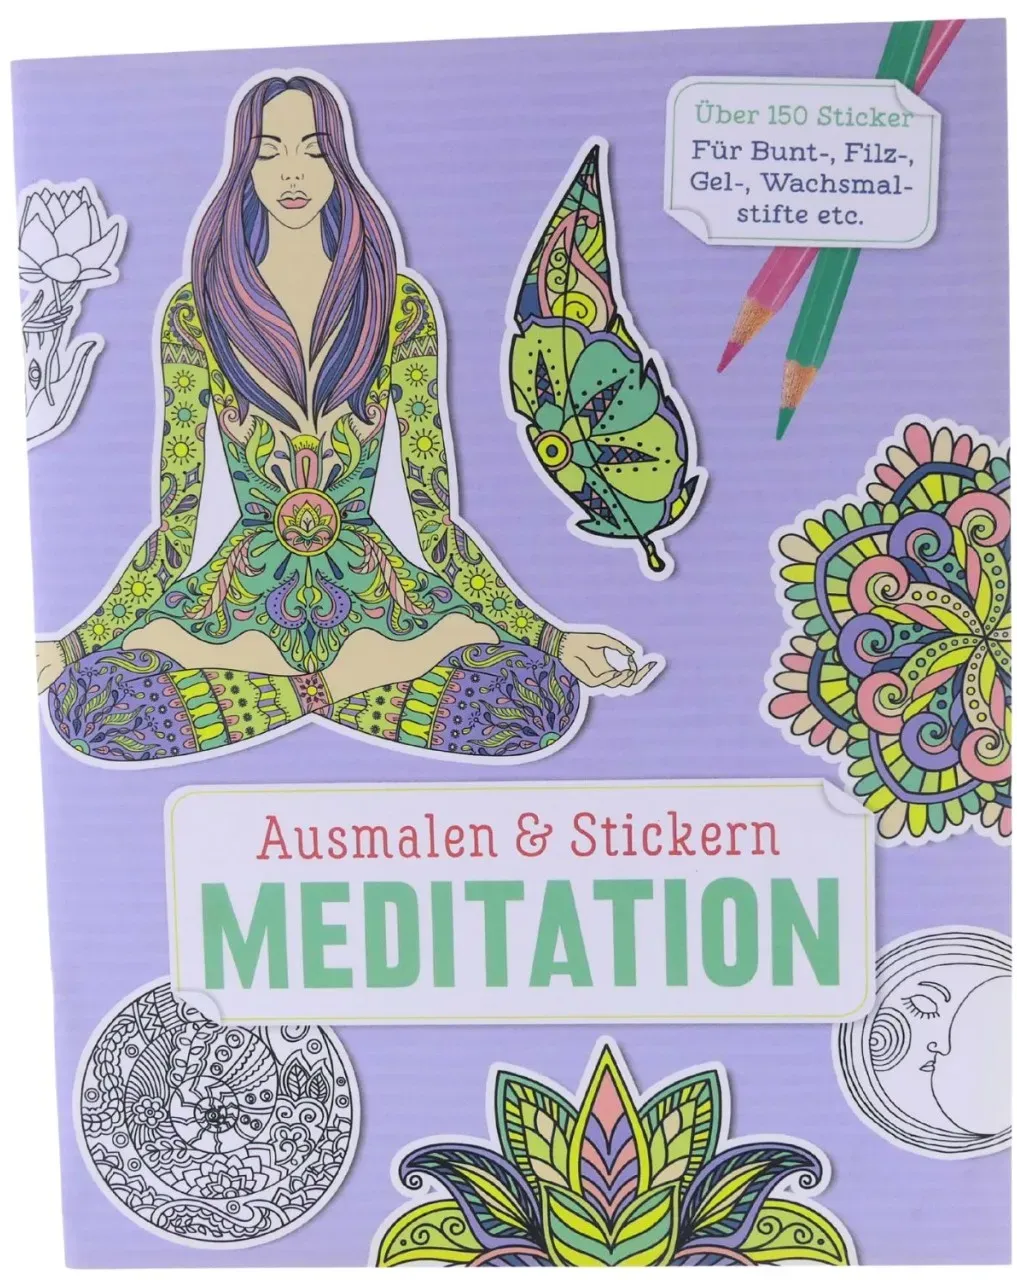 Ausmalen & Stickern: Meditation: Über 150 Sticker für Bunt- Filz- Gel- Wachsm...